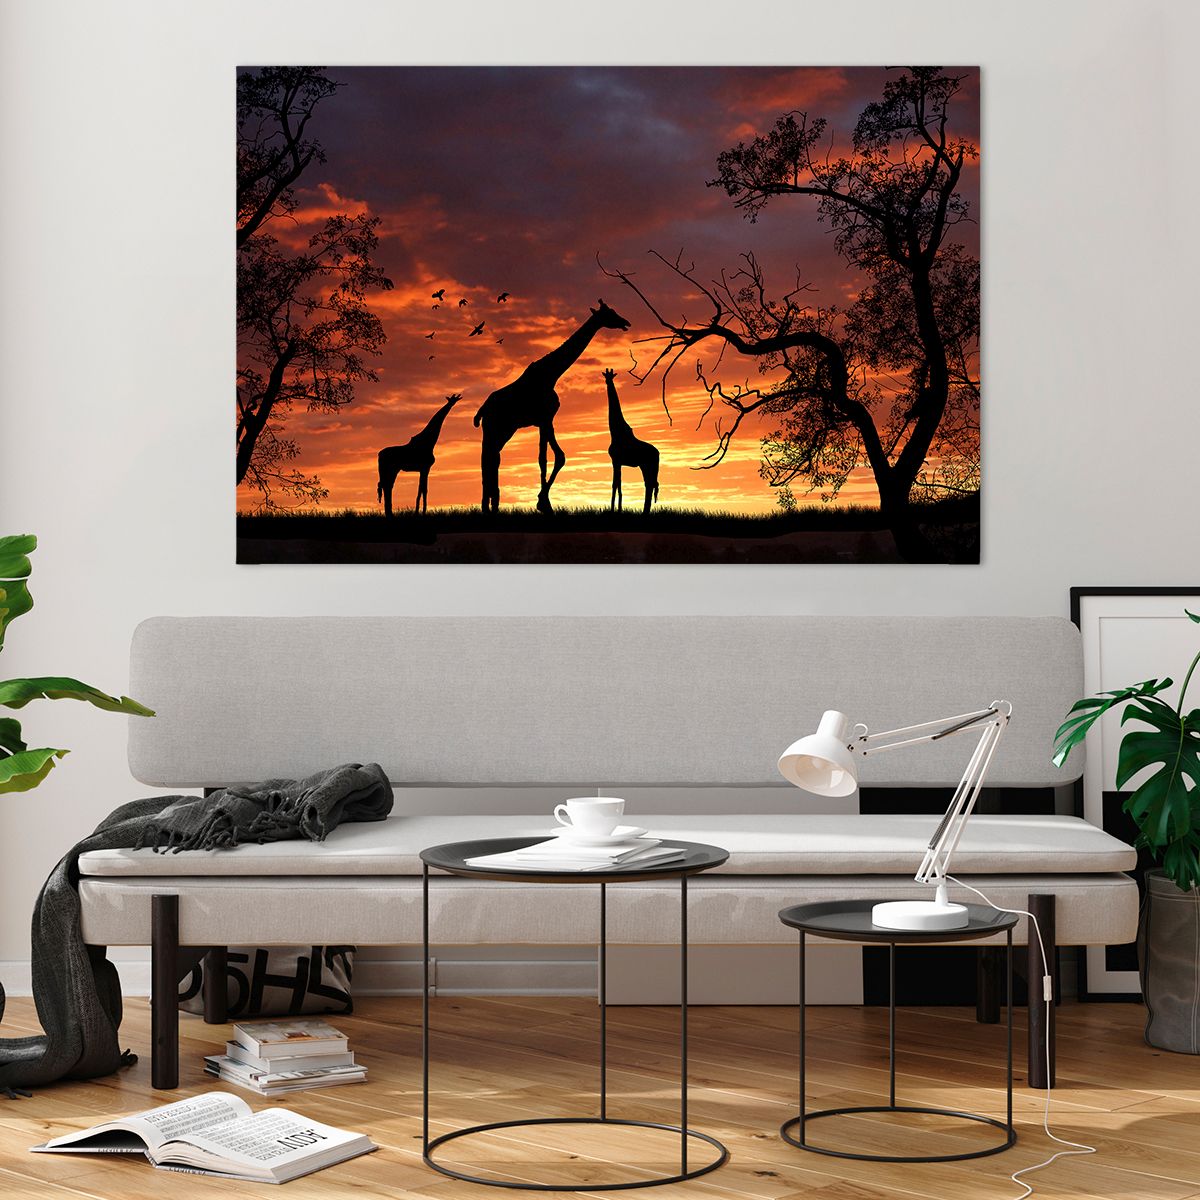 Bilder auf glas Tiere, Bilder auf glas Giraffe, Bilder auf glas Afrika, Bilder auf glas Natur, Bilder auf glas Der Sonnenuntergang